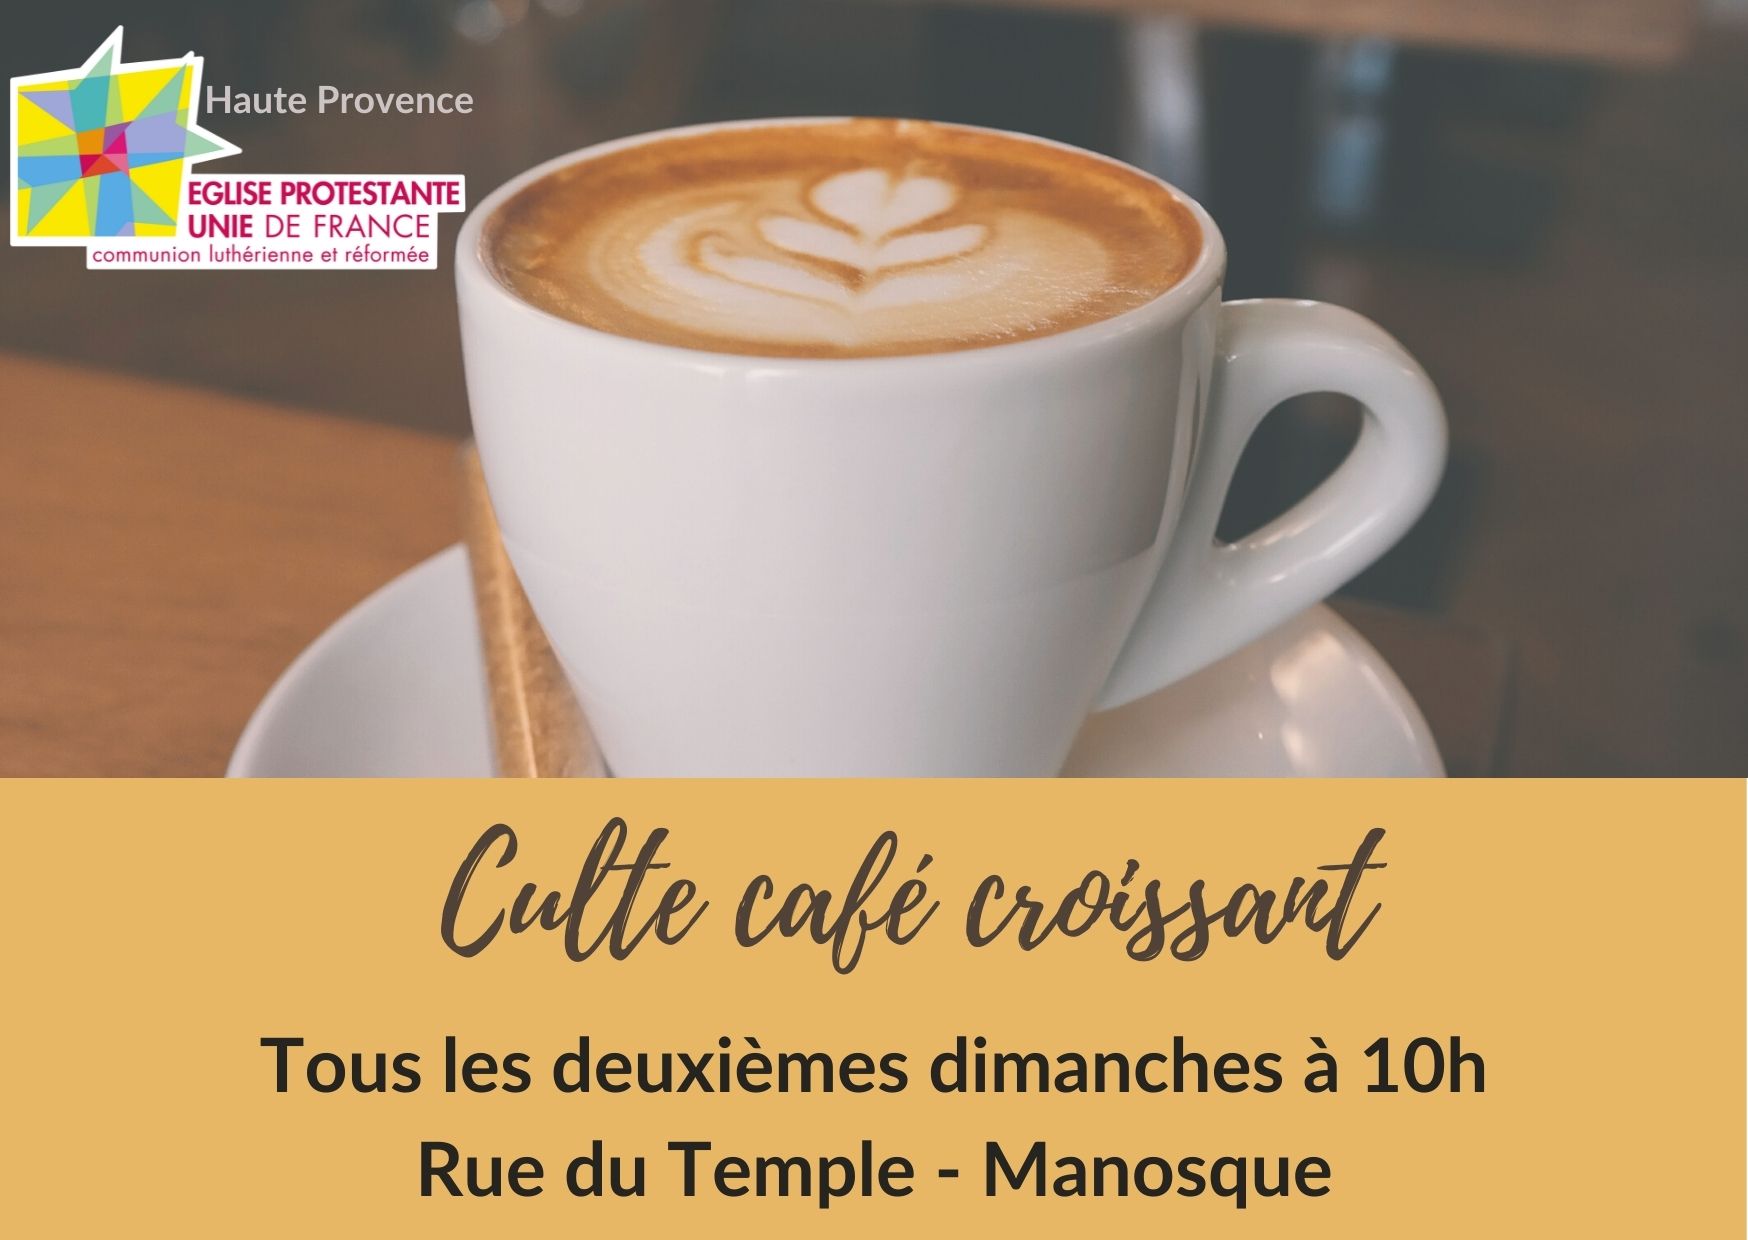 Manosque : culte café – croissant